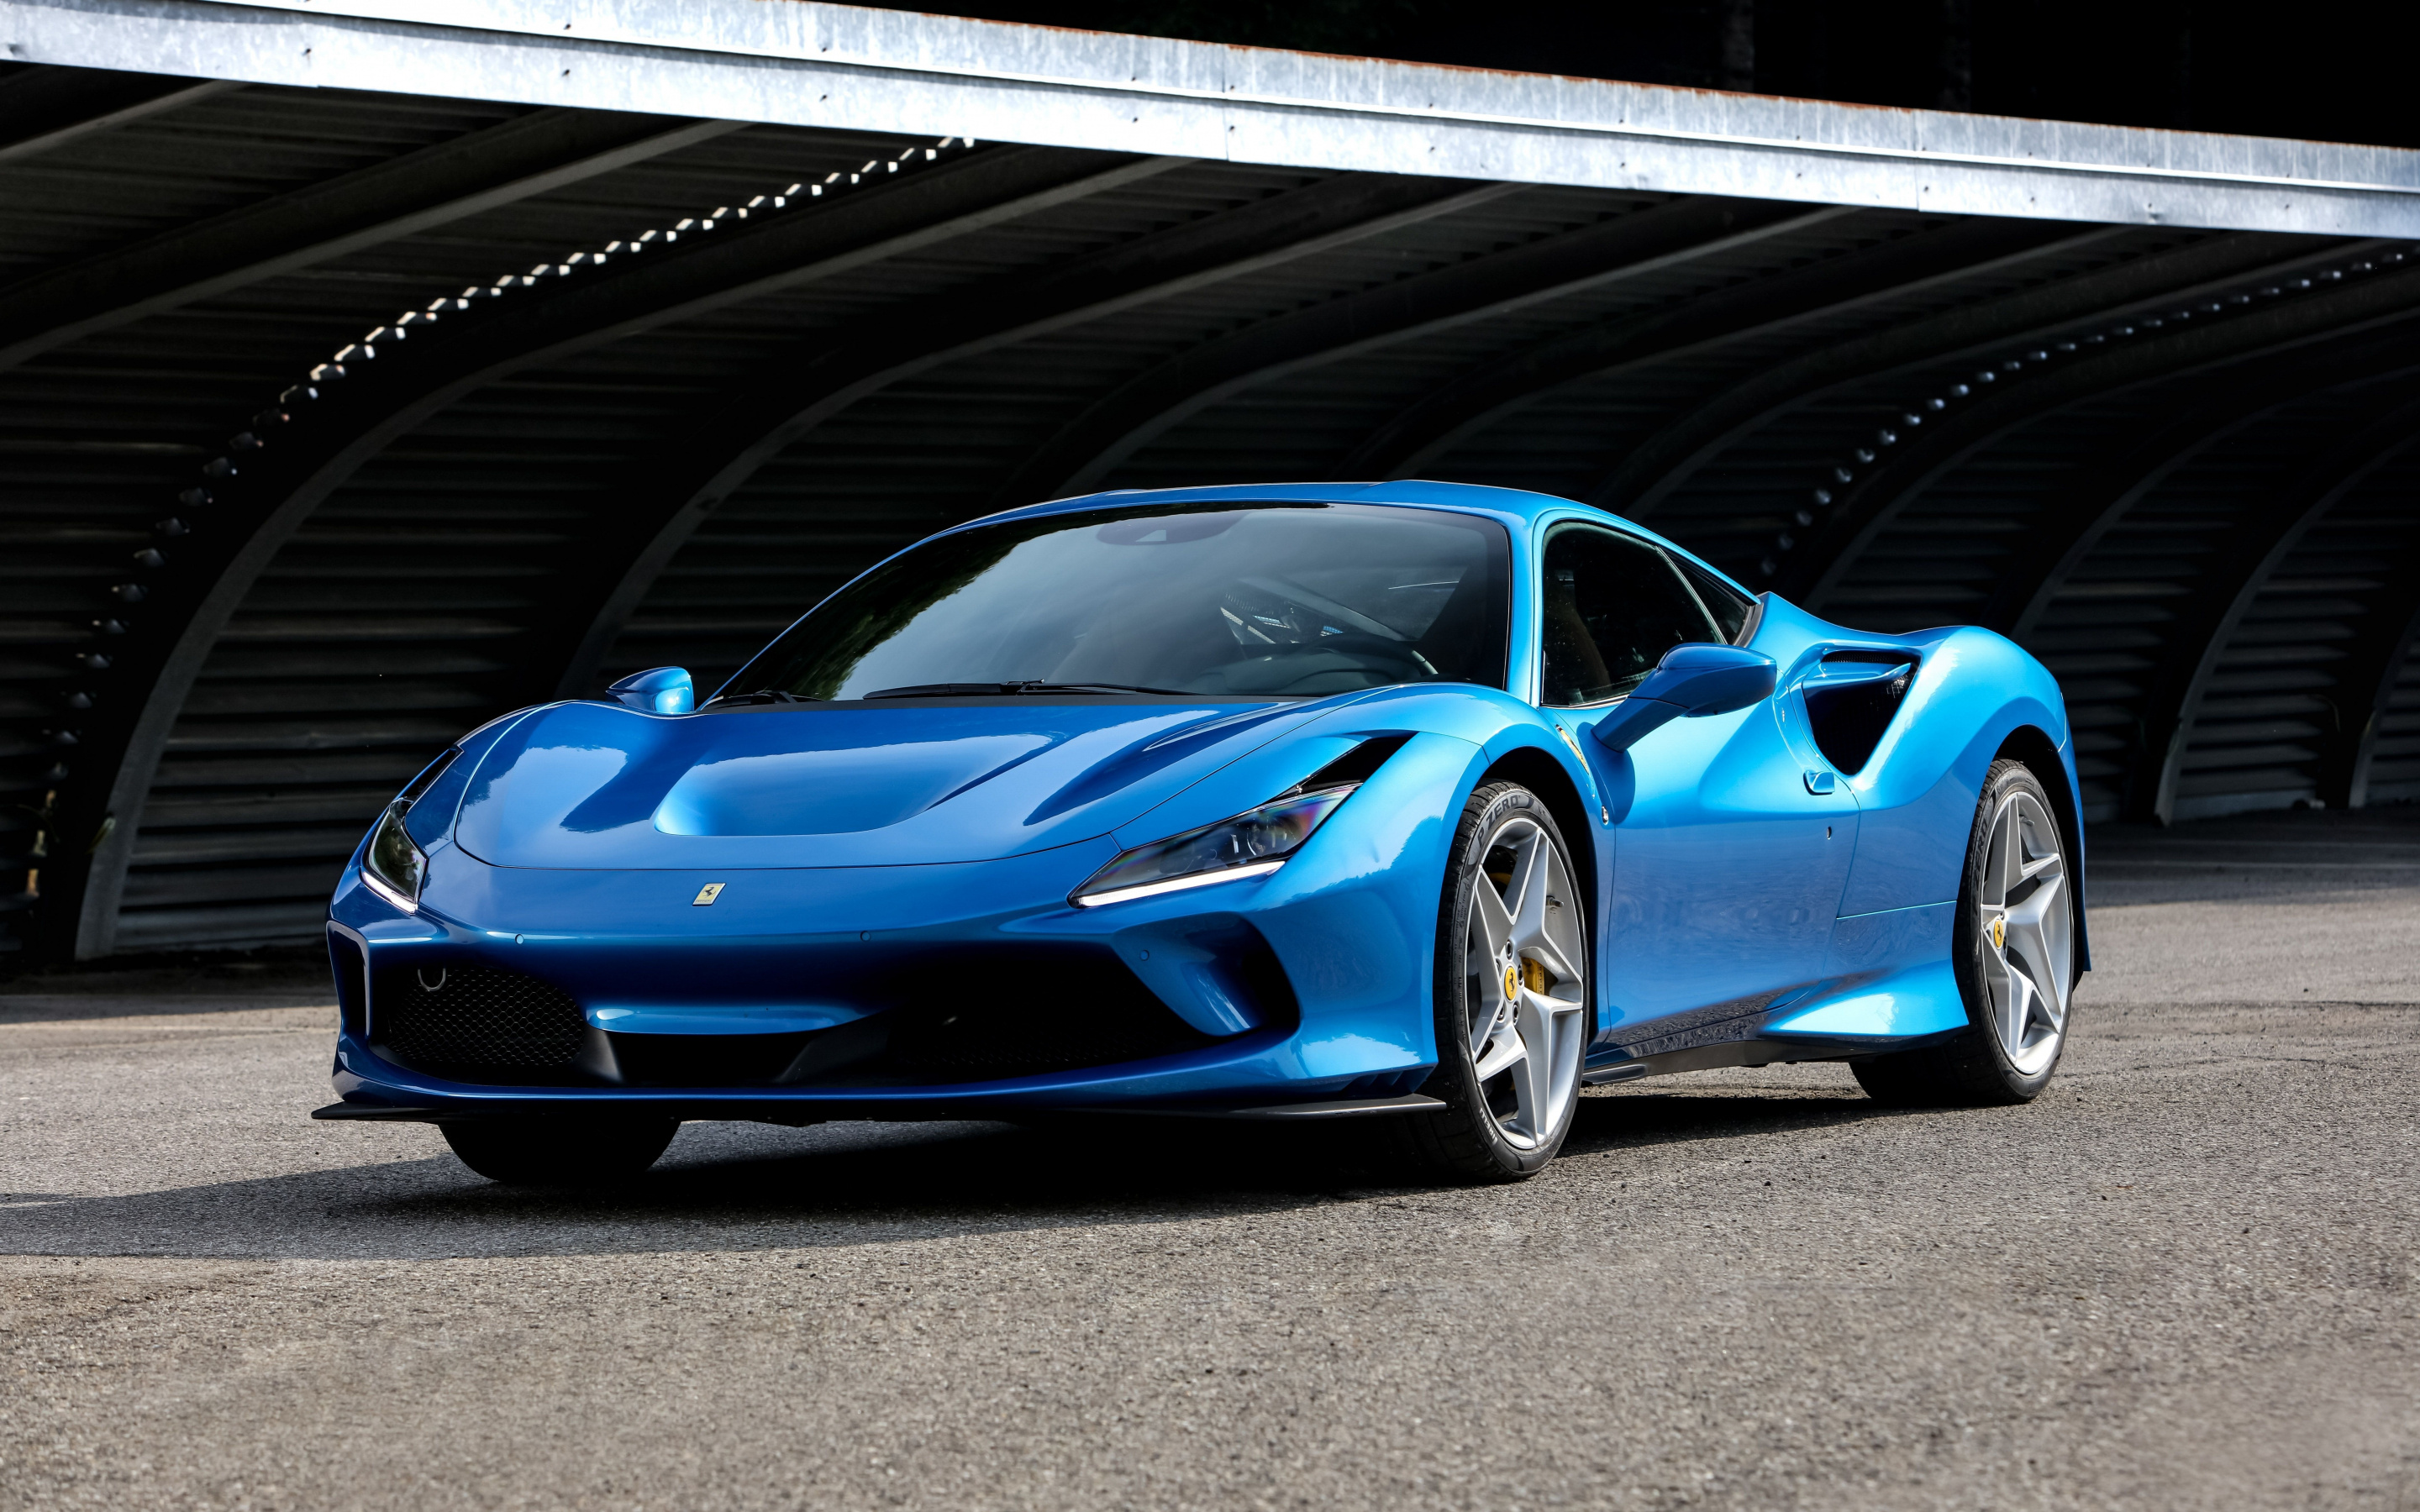 Ferrari F8, Blue sportcar wallpaper, Mac Pro, Retaia image, 2880x1800 HD Desktop